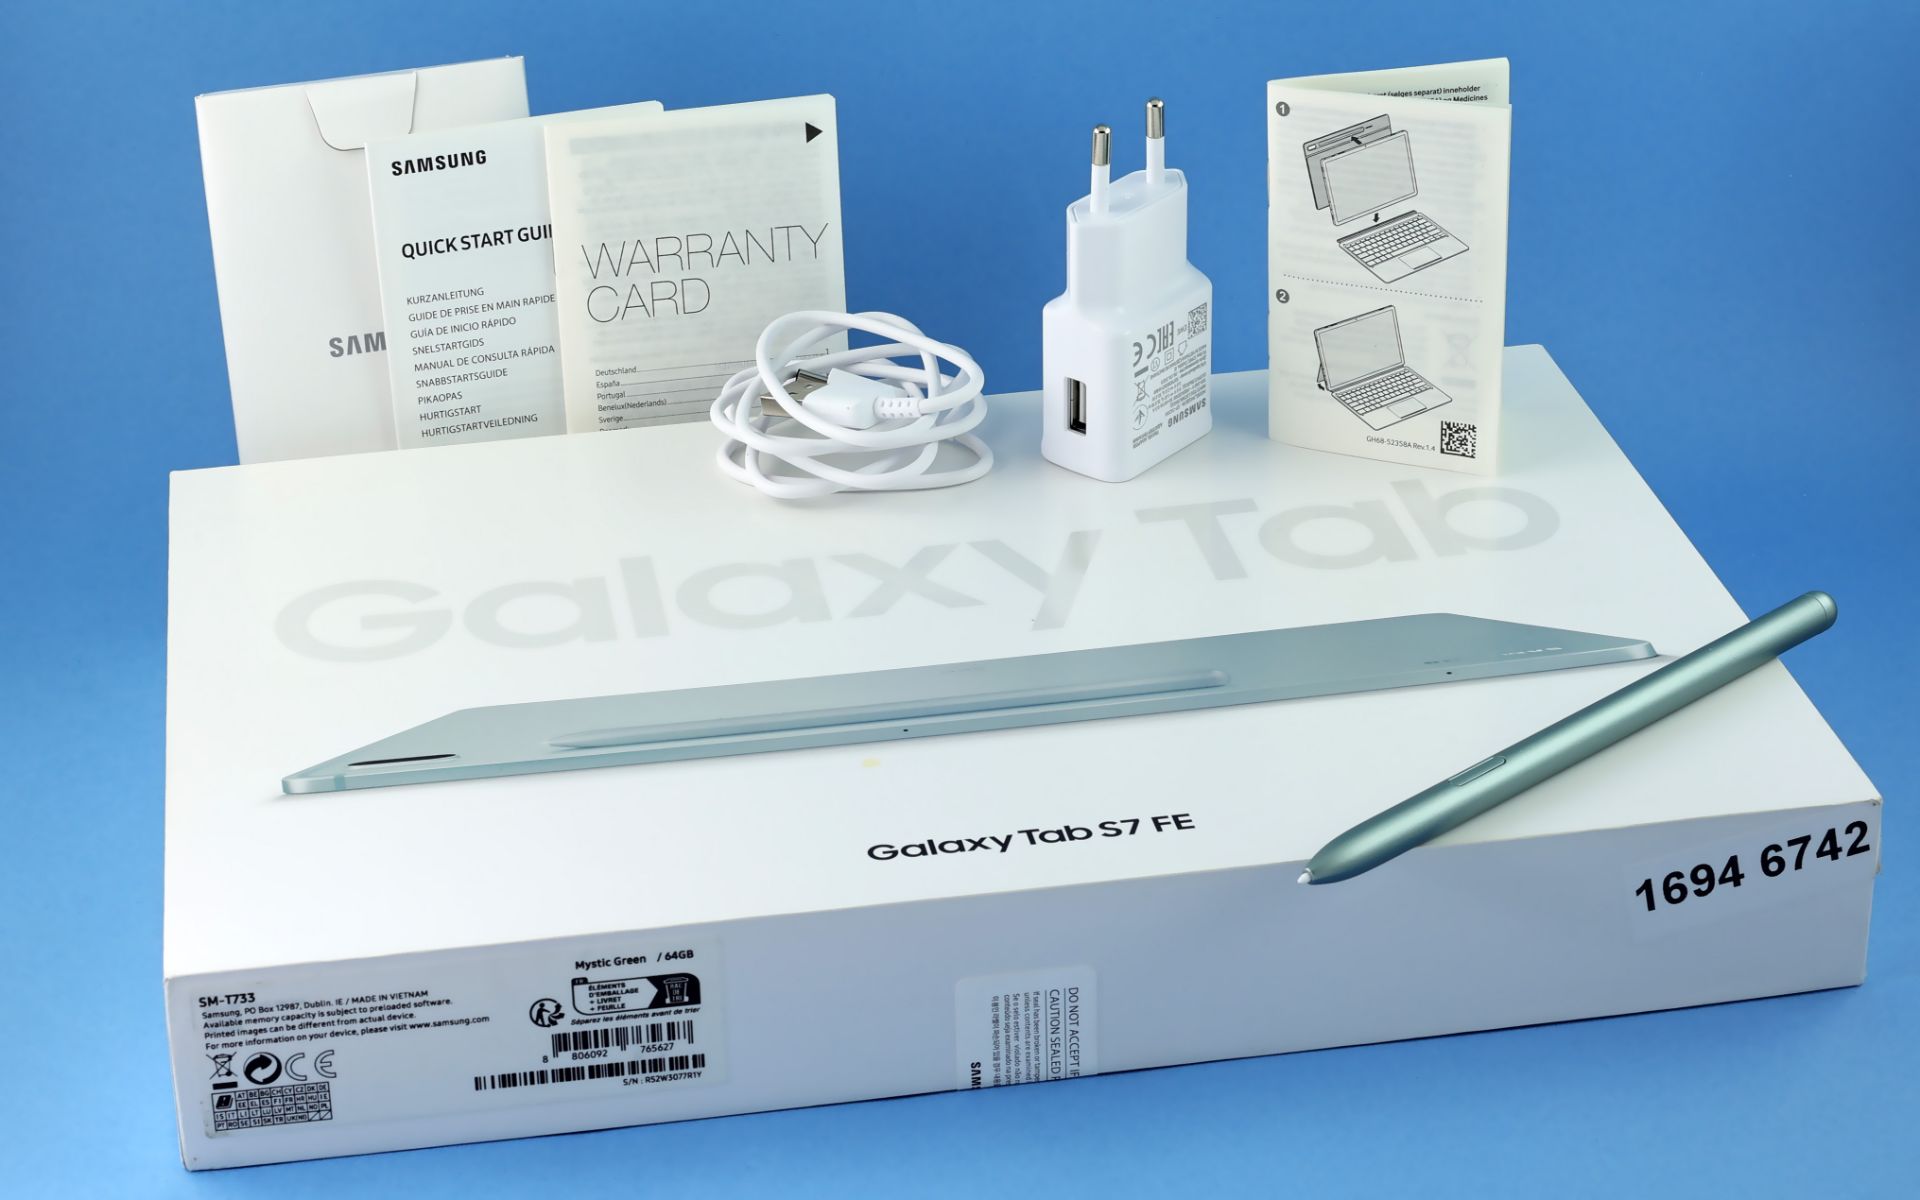 Samsung Galaxy Tab S7 Mystic Green 64GB mit Tastatur, Zubehoer und Karton - Image 4 of 4